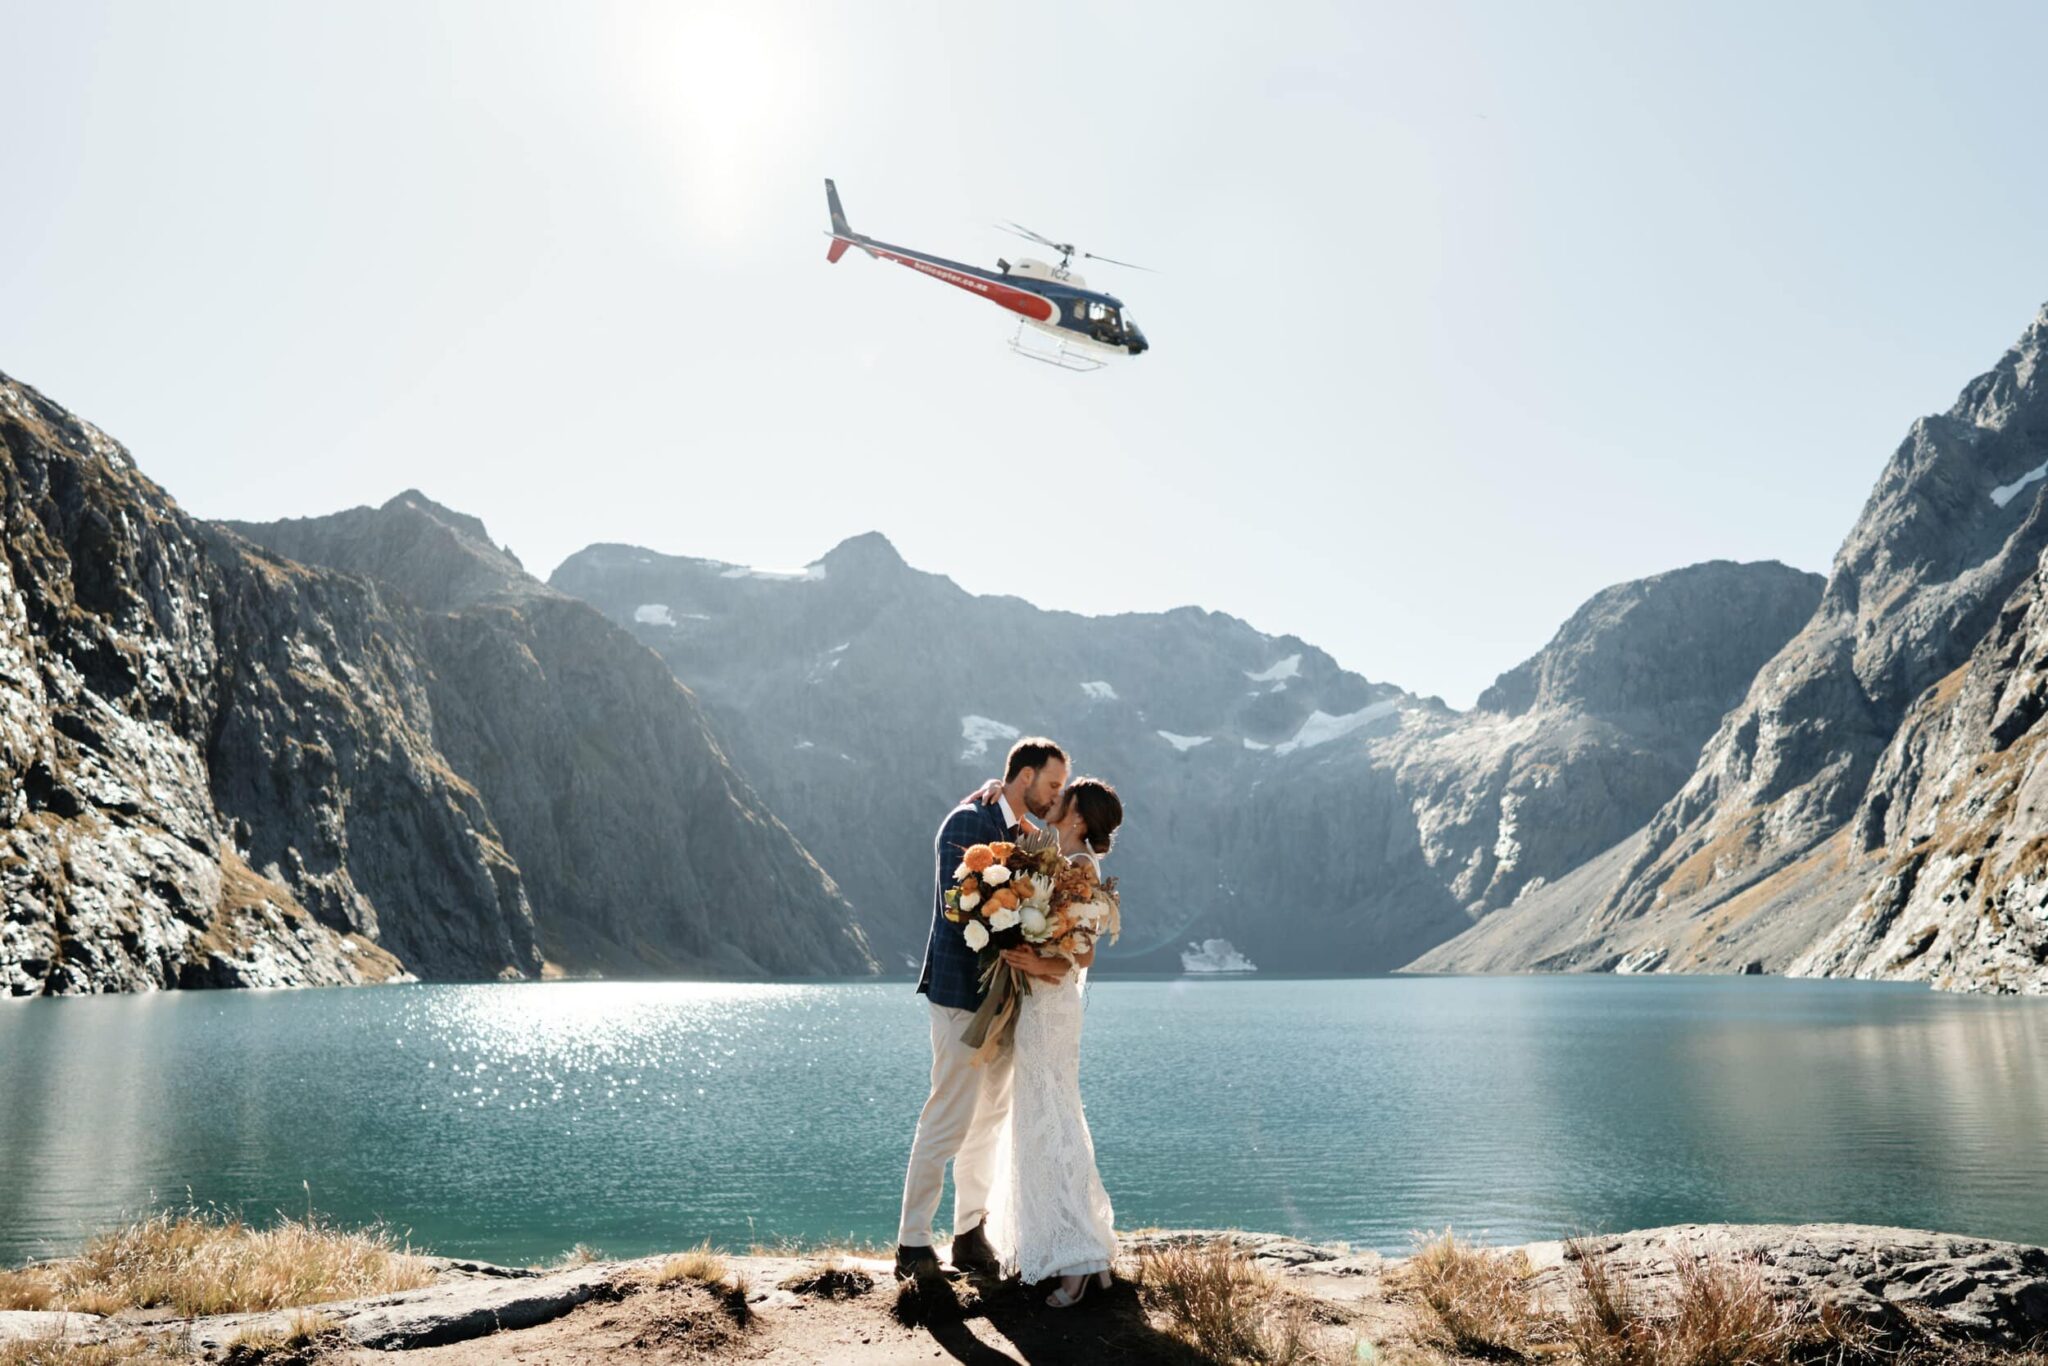 クイーンズタウン　ニュージーランド　ウェディング　前撮り　挙式　結婚式　フォトグラファー | クイーンズタウンのヘリウェディング & エロープメントプランでは、ヘリコプターを背景に湖の前に立つ新郎新婦を撮影しています。